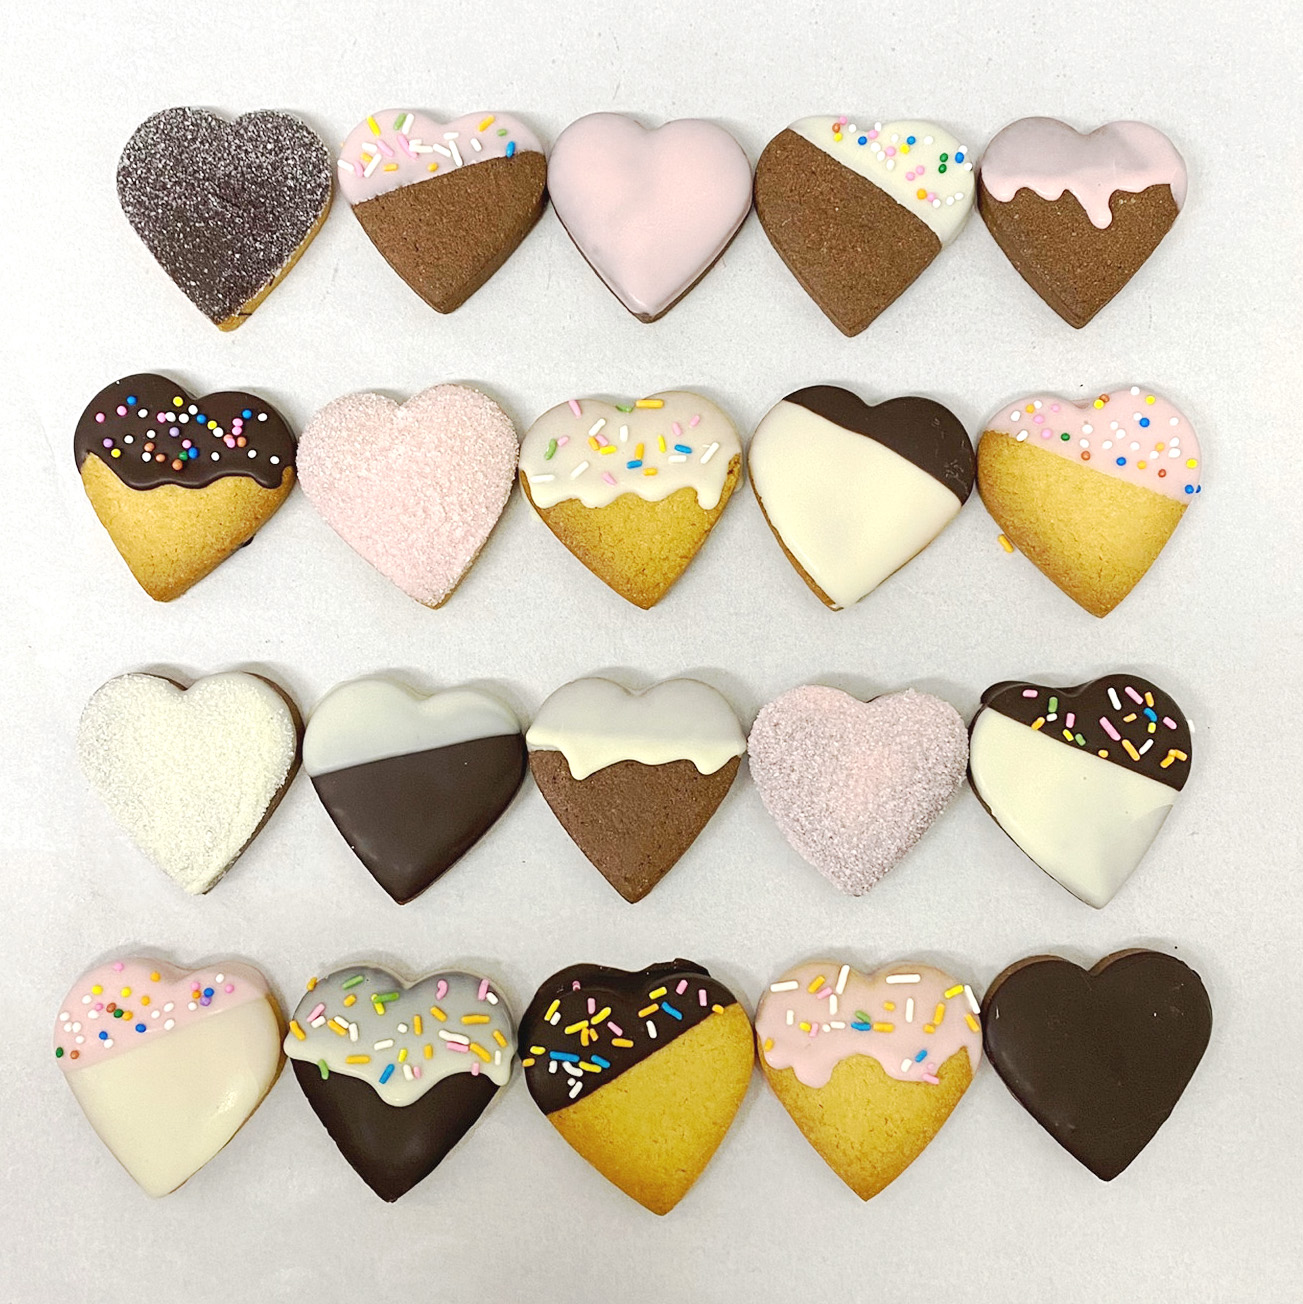 하트 수제 초콜릿 쿠키 만들기 풀세트 DIY 재료 포장재료 키트 발렌타인데이 선물